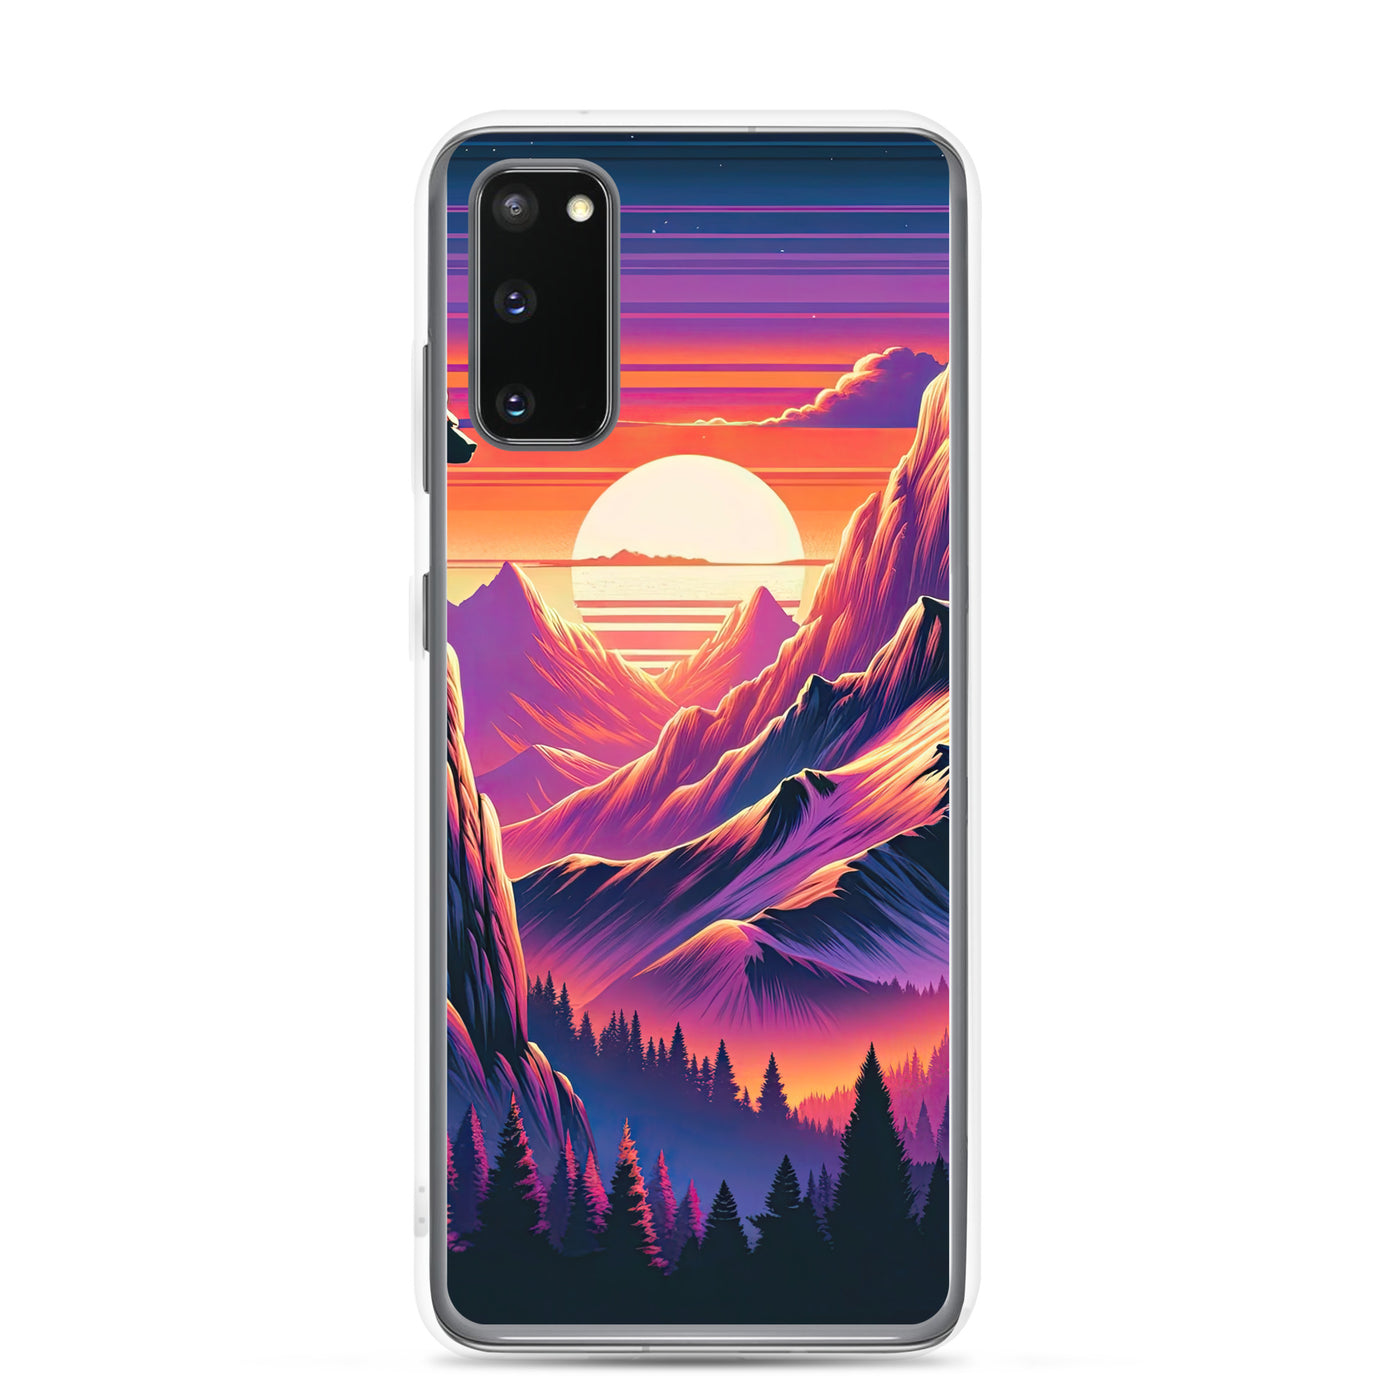 Alpen-Sonnenuntergang mit Bär auf Hügel, warmes Himmelsfarbenspiel - Samsung Schutzhülle (durchsichtig) camping xxx yyy zzz Samsung Galaxy S20